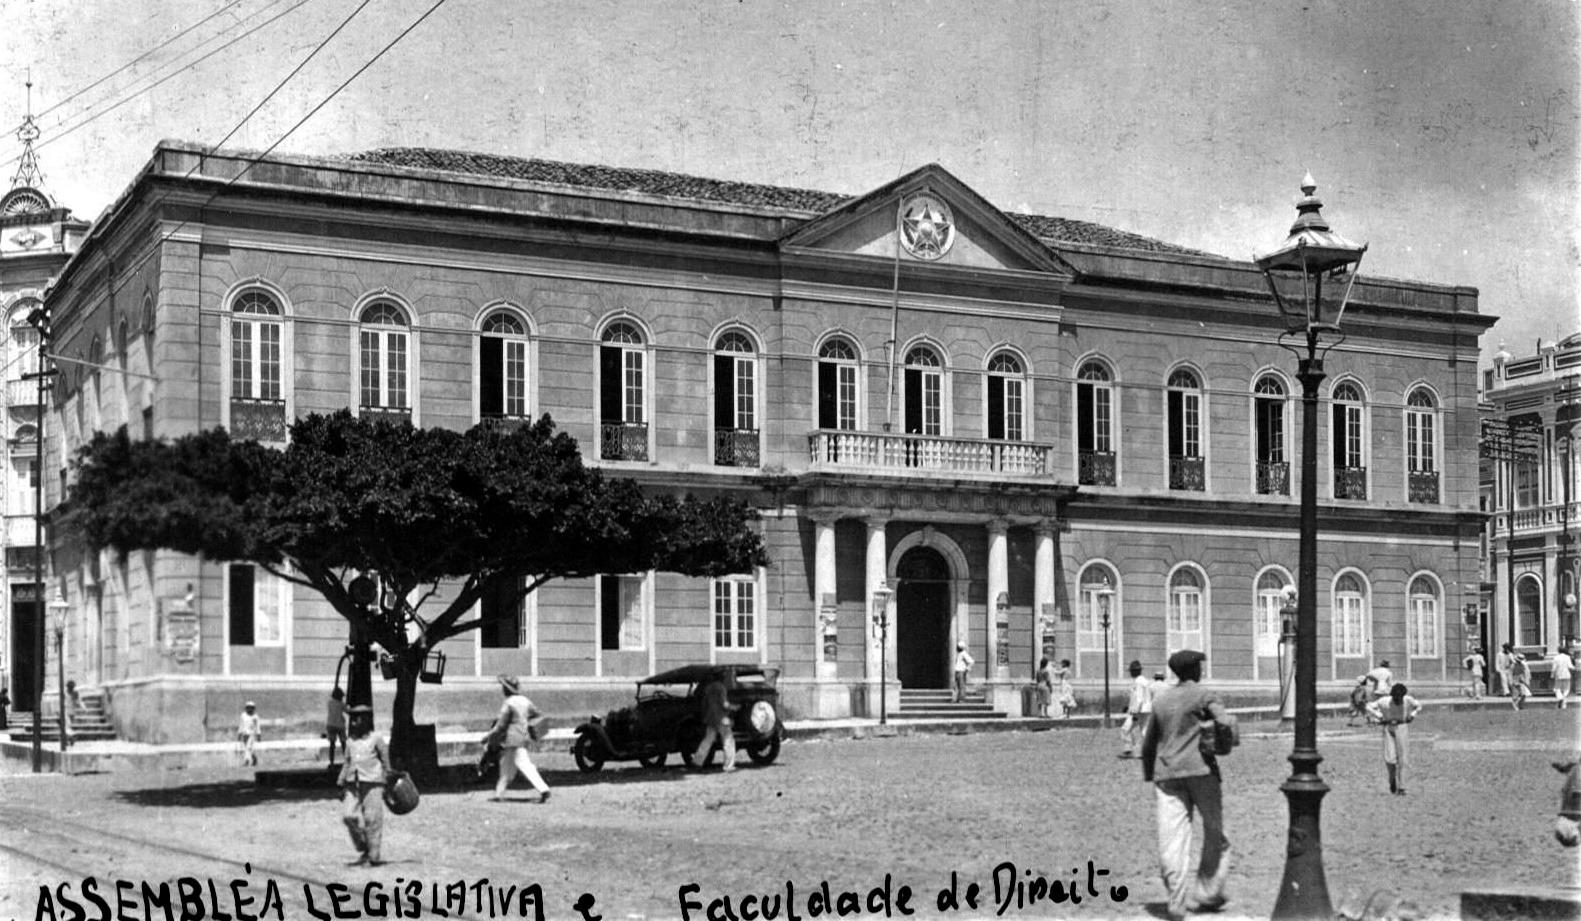 Imagem em preto e branco mostra antiga sede da Assembleia Legislativa do Ceará, no Centro de Fortaleza.